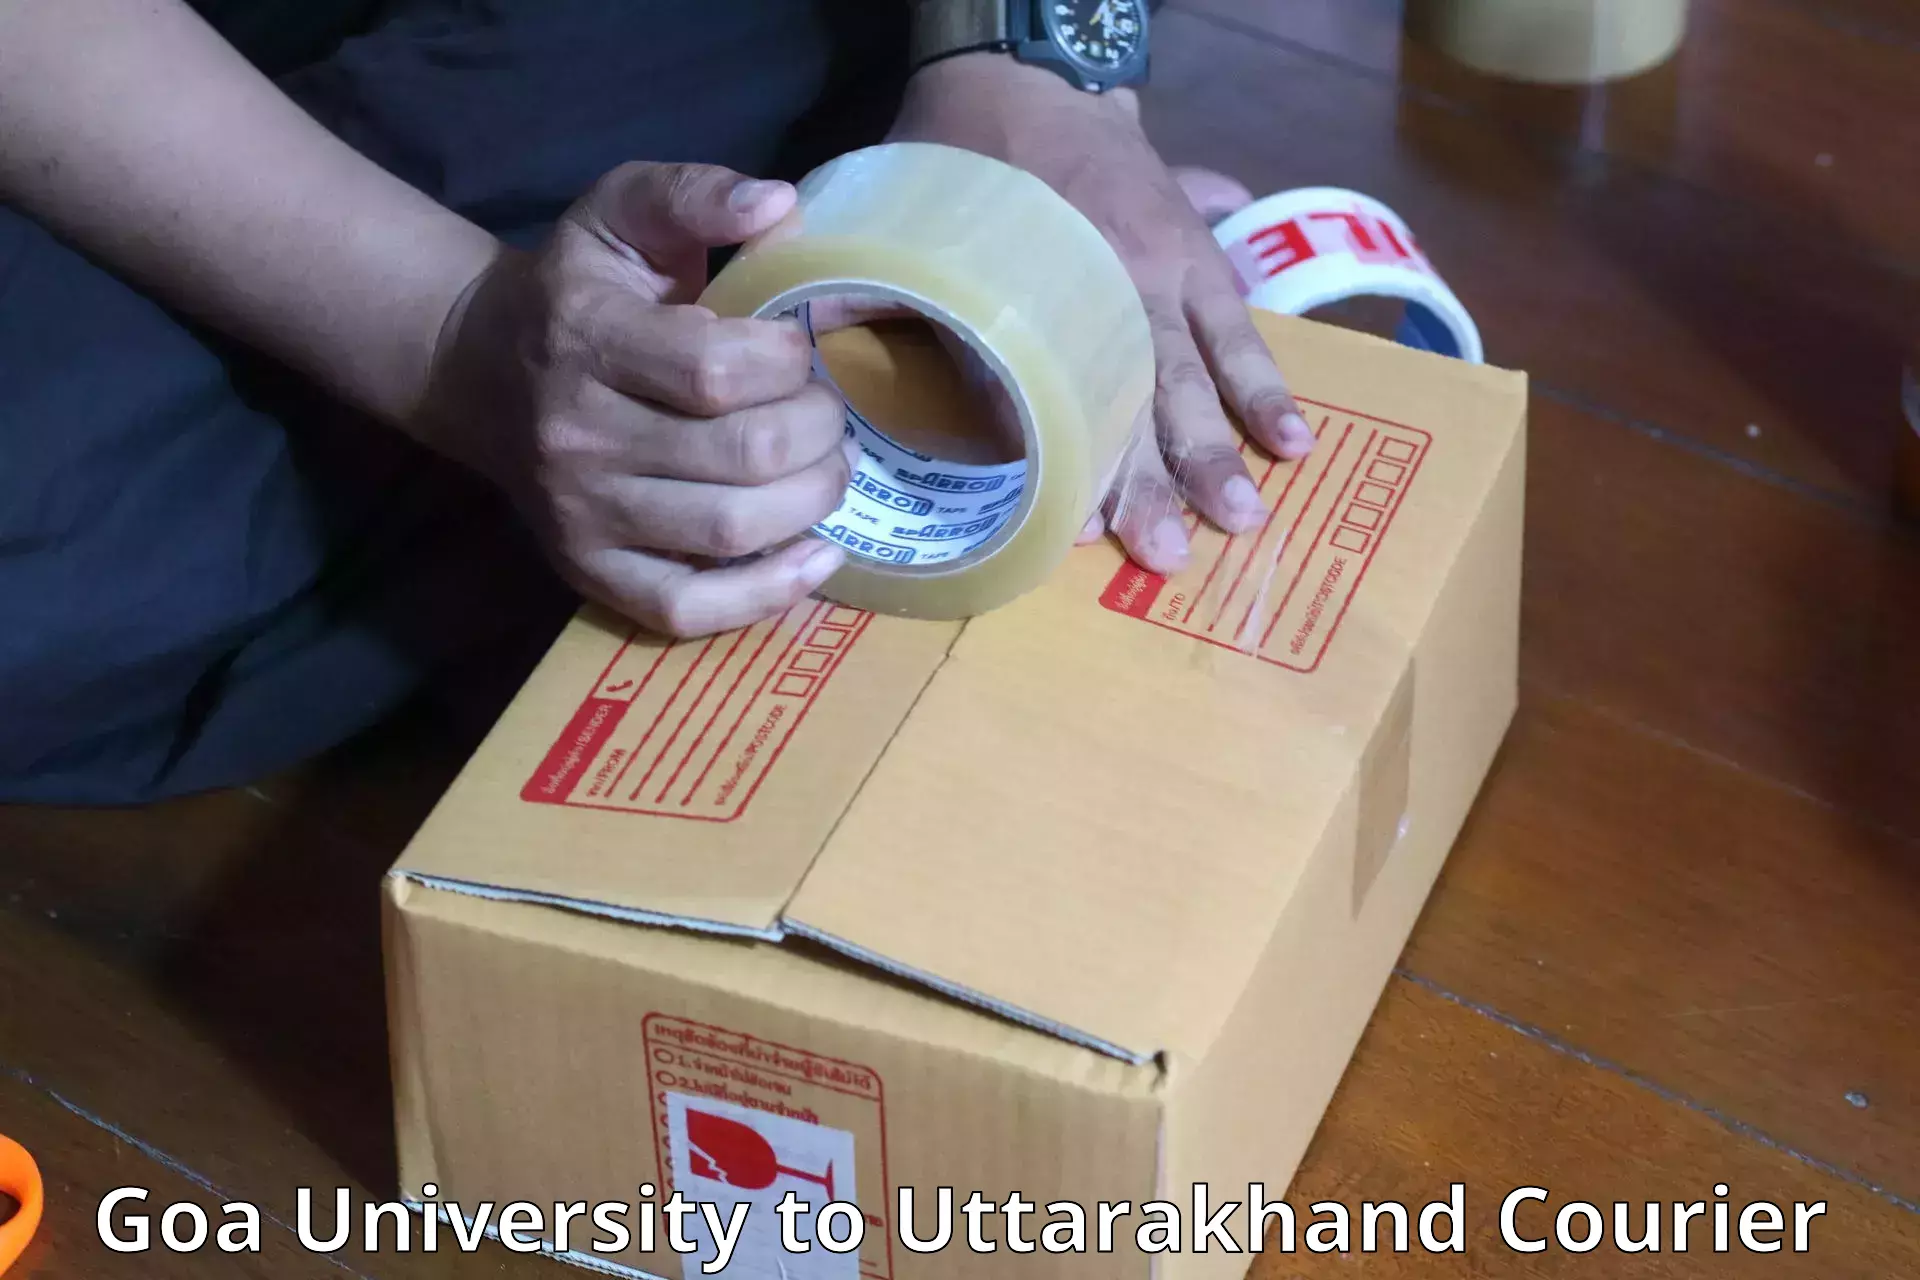 Luggage shipment processing Goa University to Uttarakhand